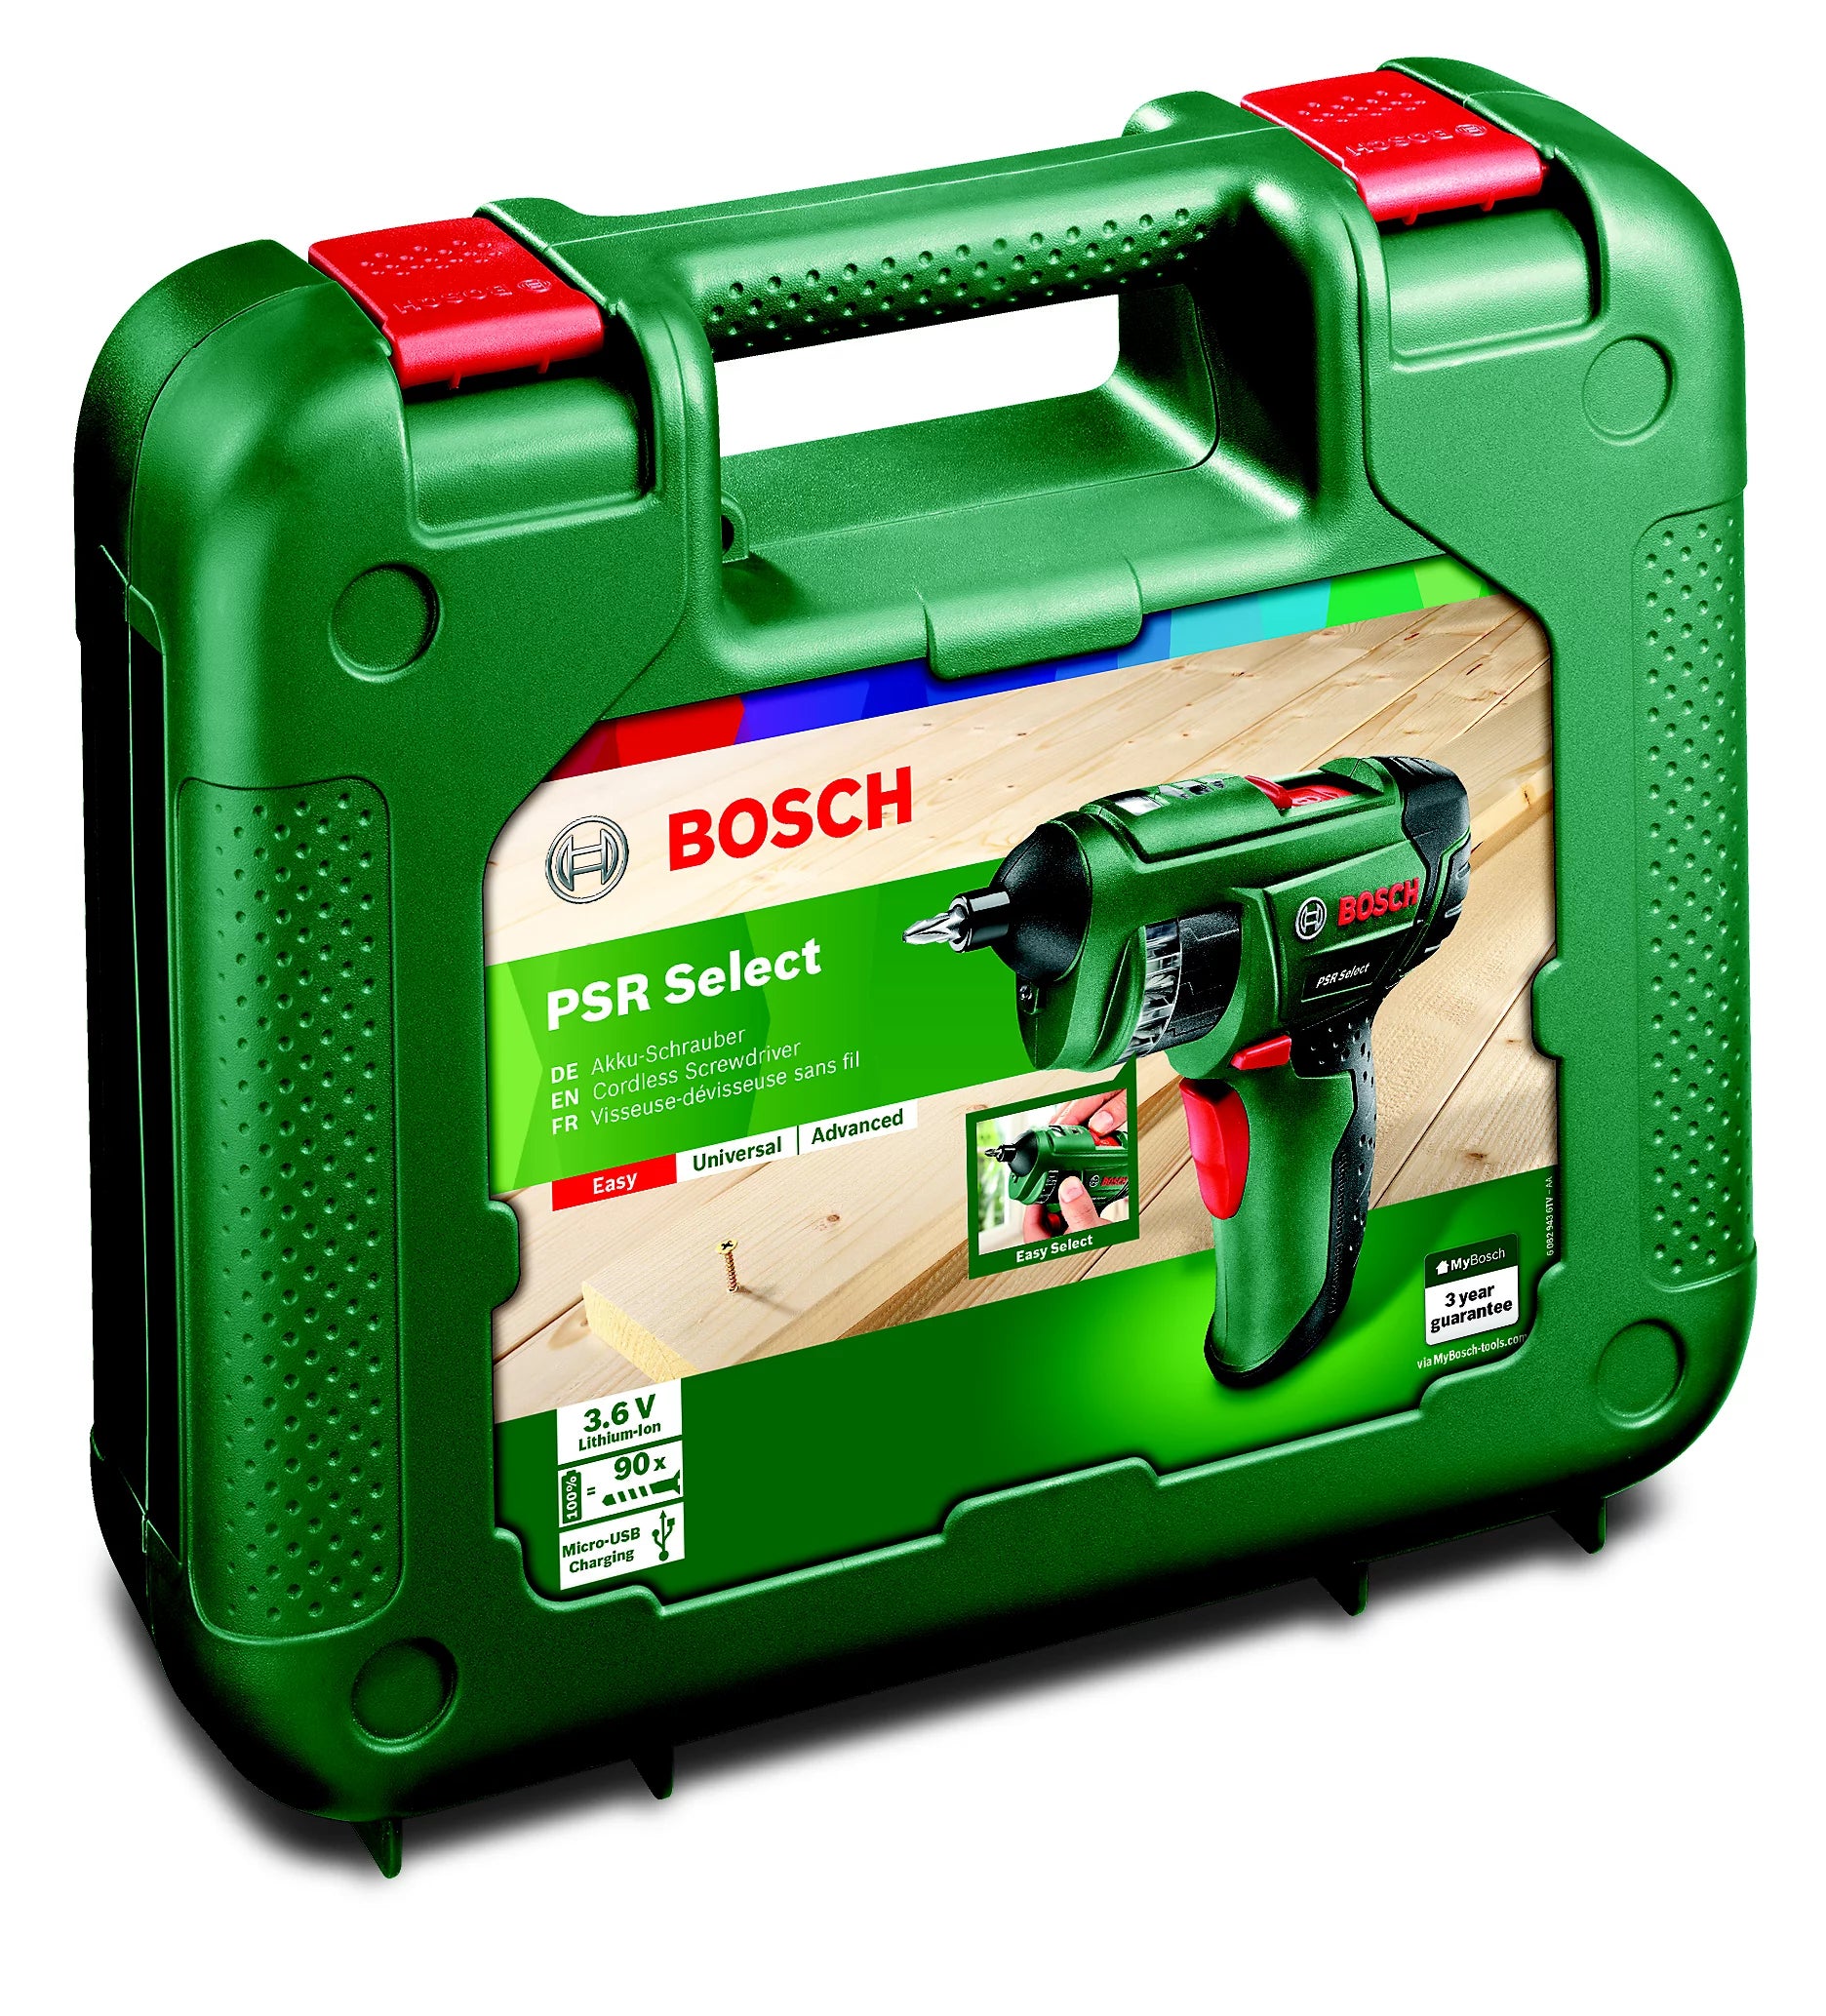 Bosch-Cordless Screwdriver-7262D